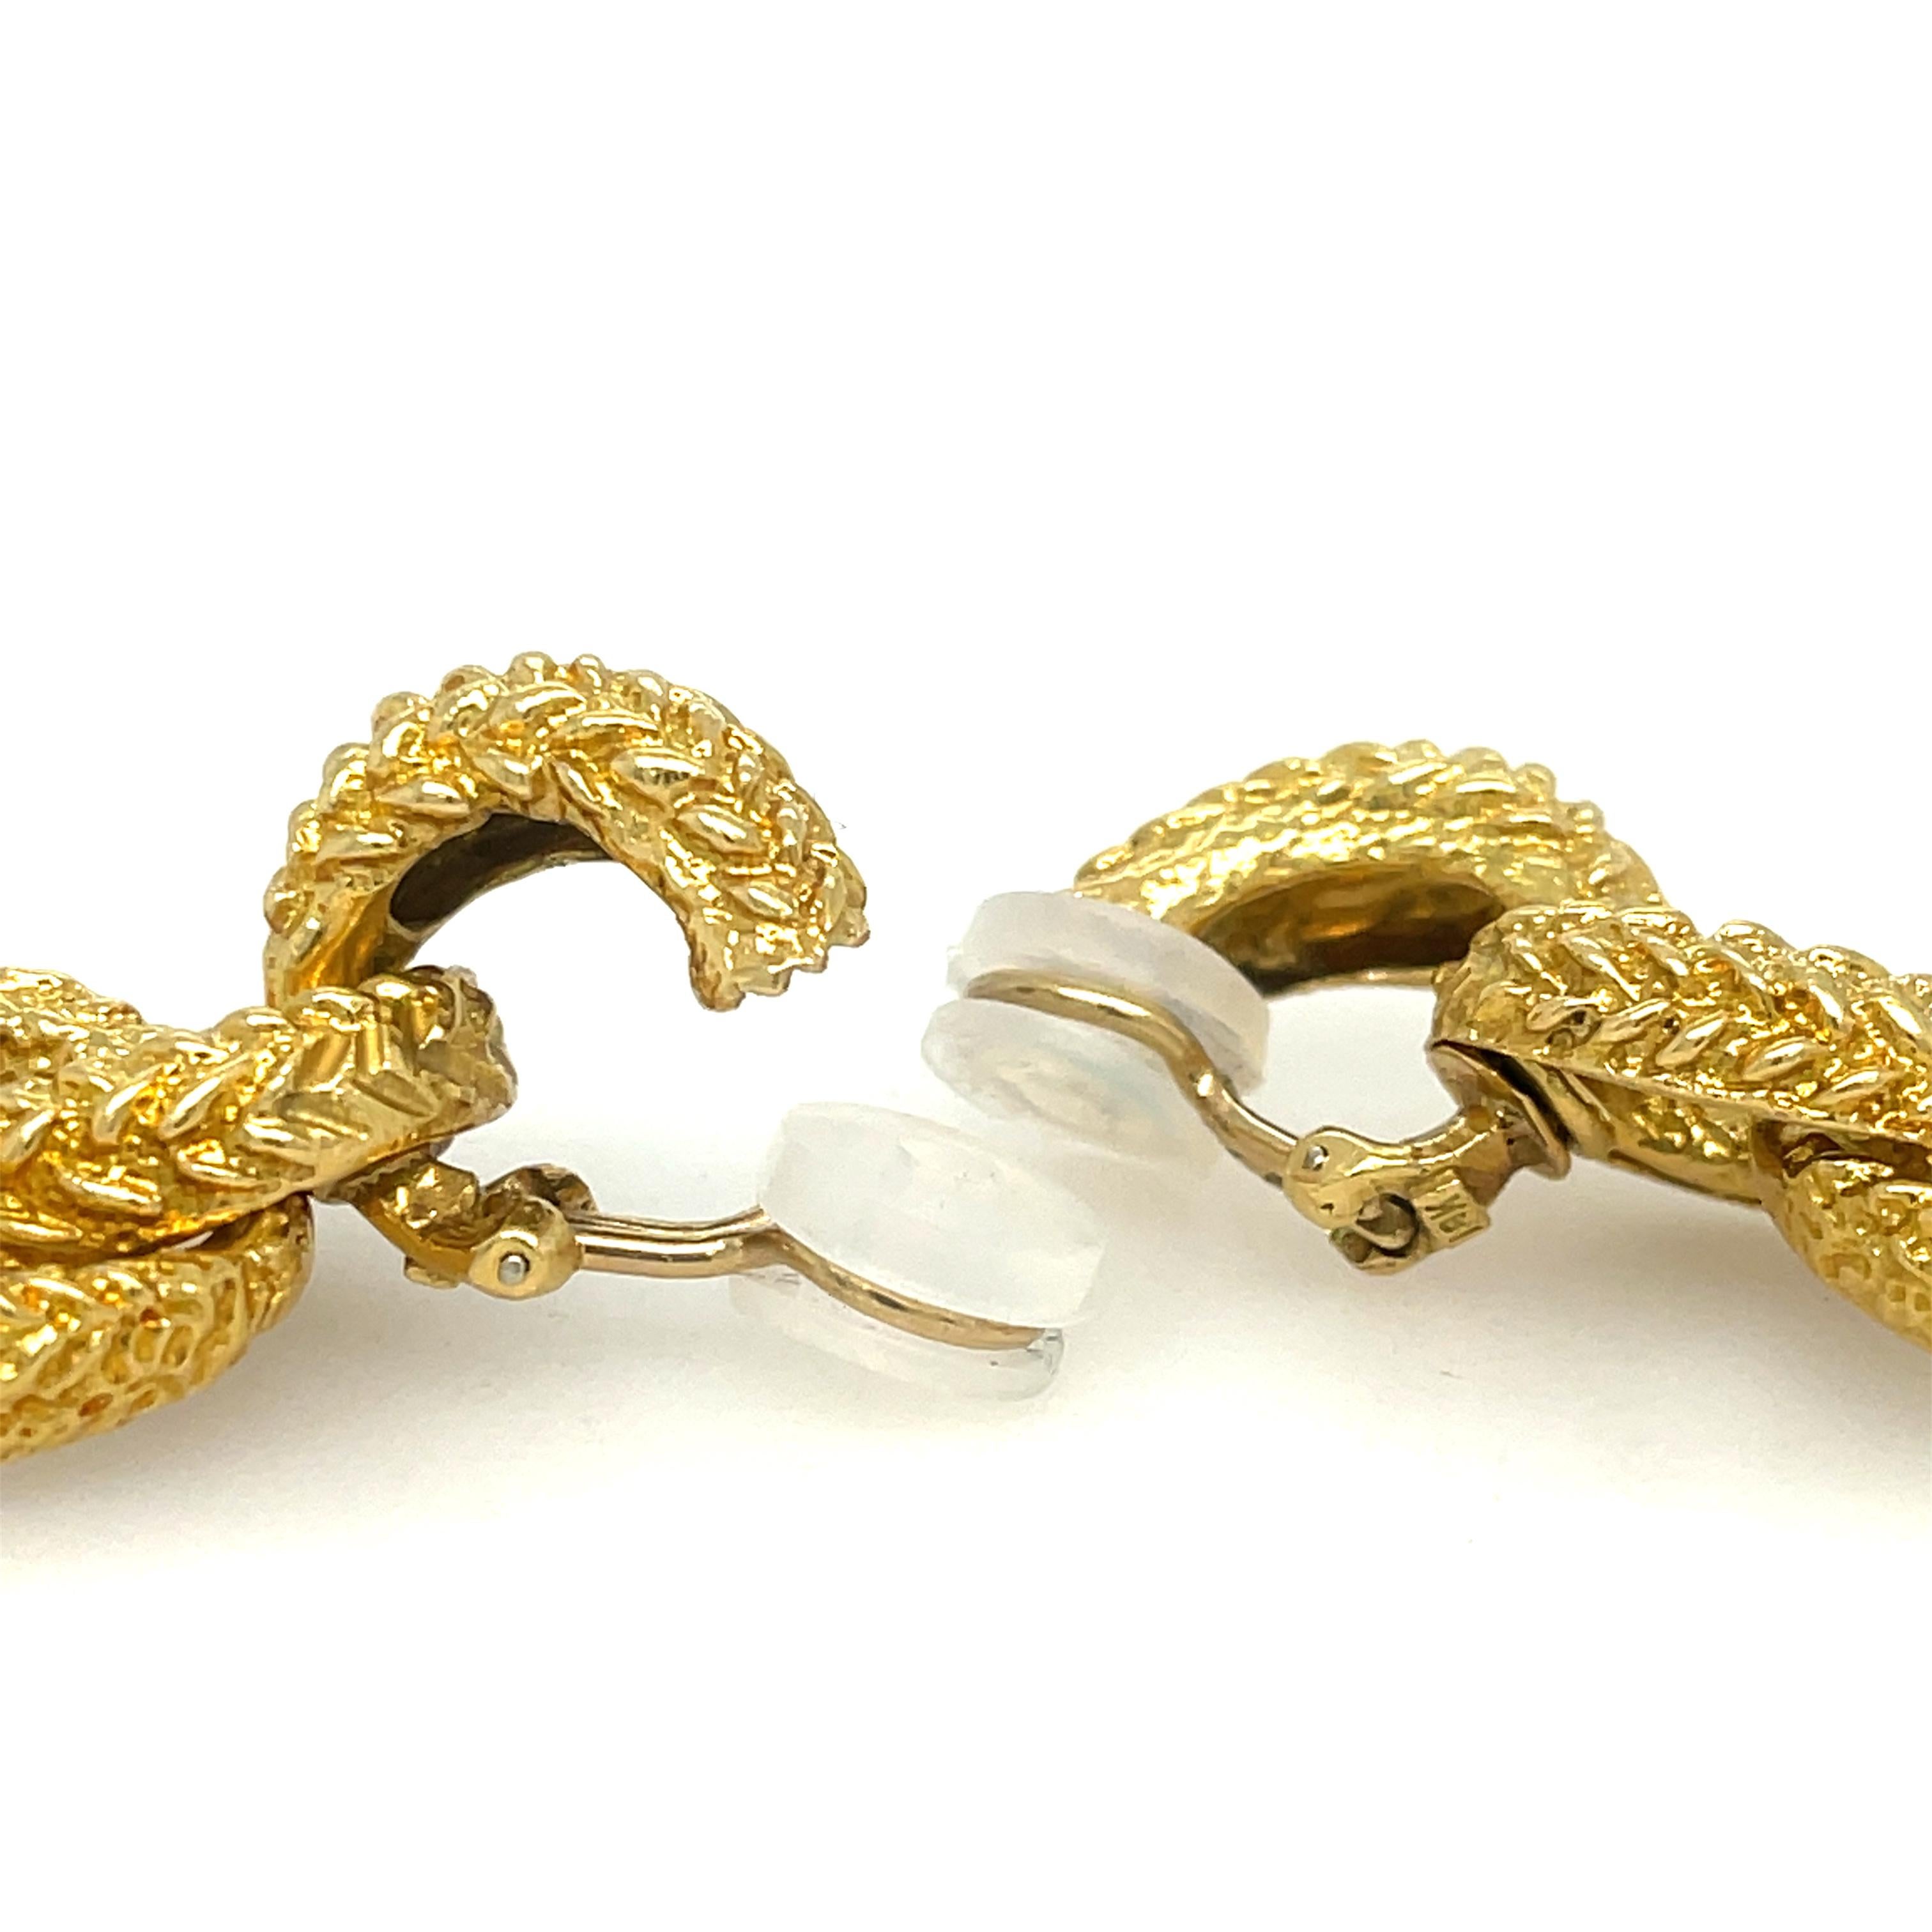 Double Loop Dangle Earrings in 18K Yellow Gold. Clip-on earrings. 

2